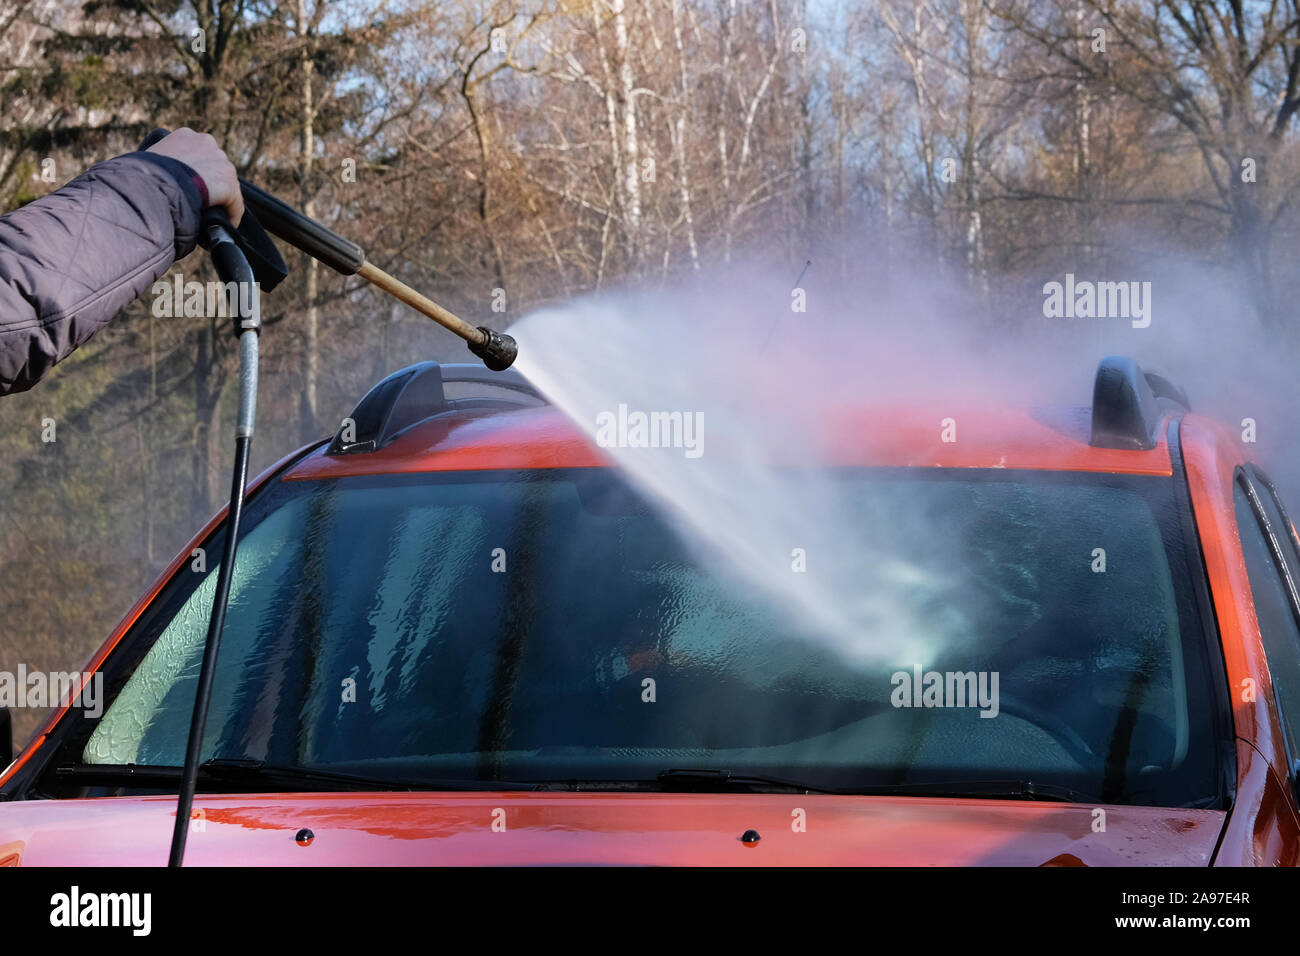 La pulizia con acqua a self-service car wash. L'uomo lava parabrezza nella sua vettura arancione. Acqua saponata scorre verso il basso. Foto Stock